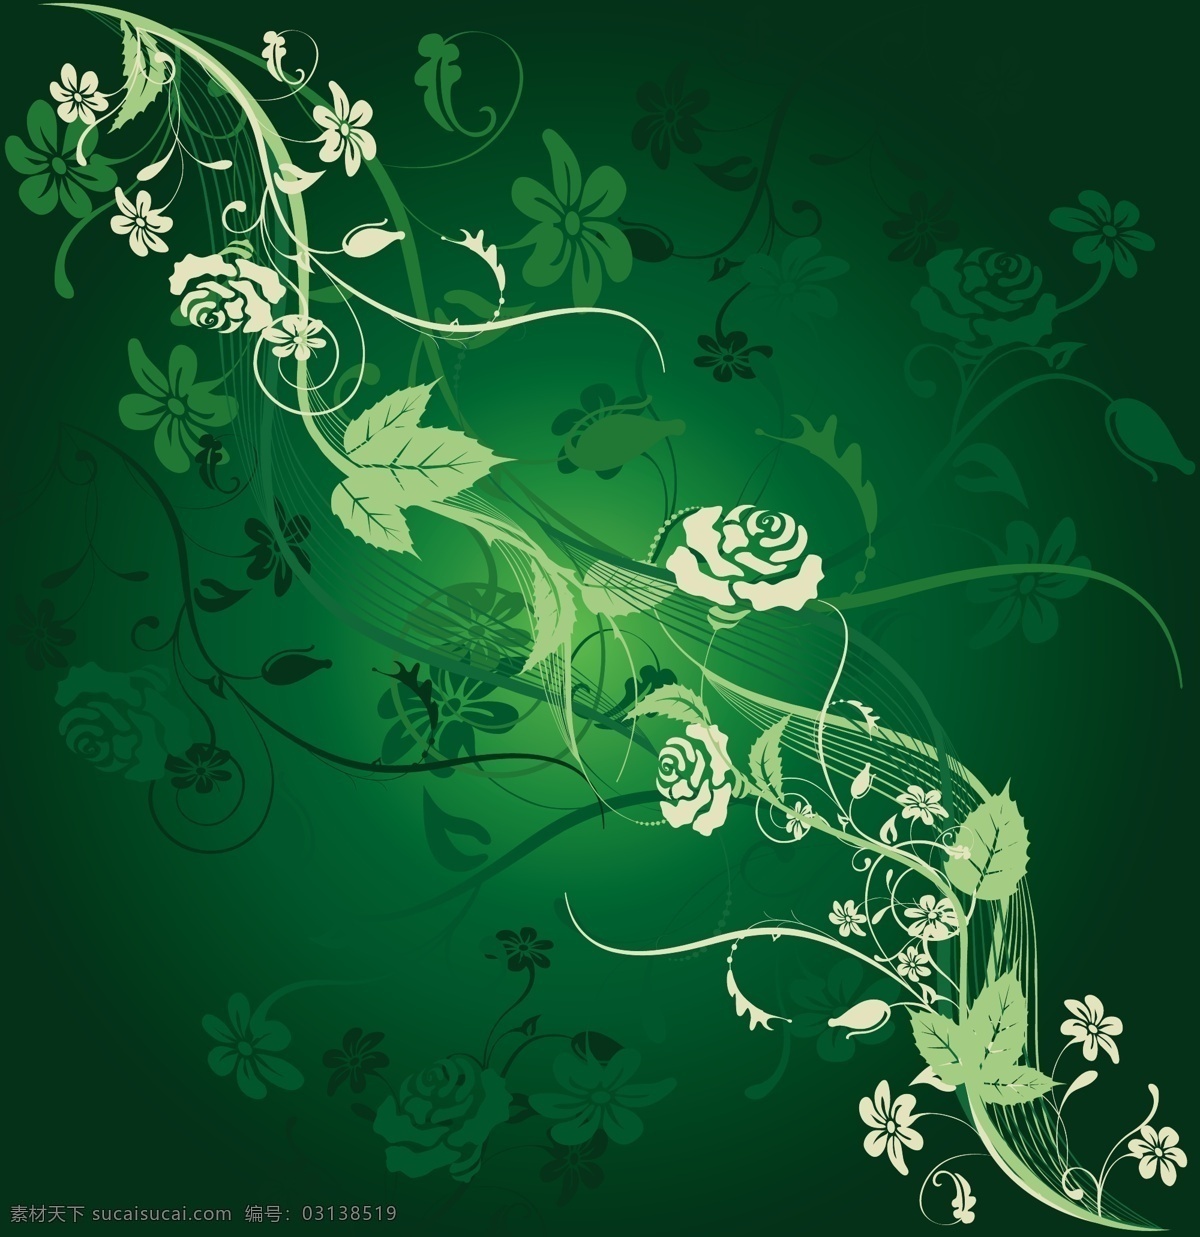 花纹 图案 矢量 白色 背景 淡雅 底纹 动感 花朵 华丽 渐变 绿色 神秘 玫瑰花 生机 线条 叶子 印花 矢量素材 矢量图 花纹花边